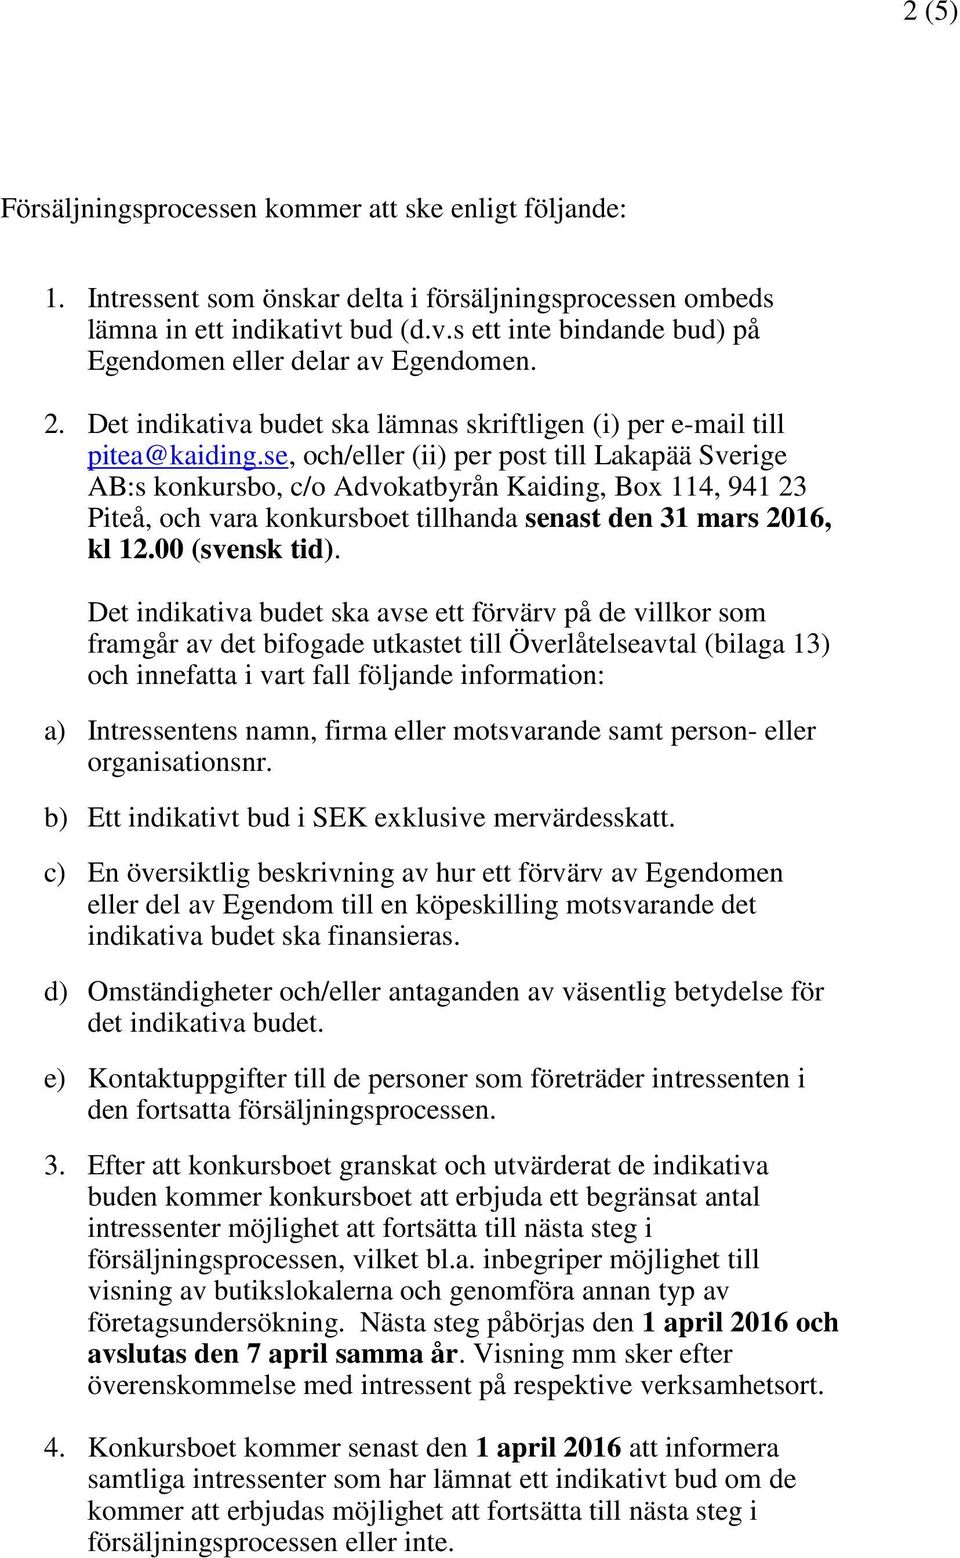 se, och/eller (ii) per post till Lakapää Sverige AB:s konkursbo, c/o Advokatbyrån Kaiding, Box 114, 941 23 Piteå, och vara konkursboet tillhanda senast den 31 mars 2016, kl 12.00 (svensk tid).